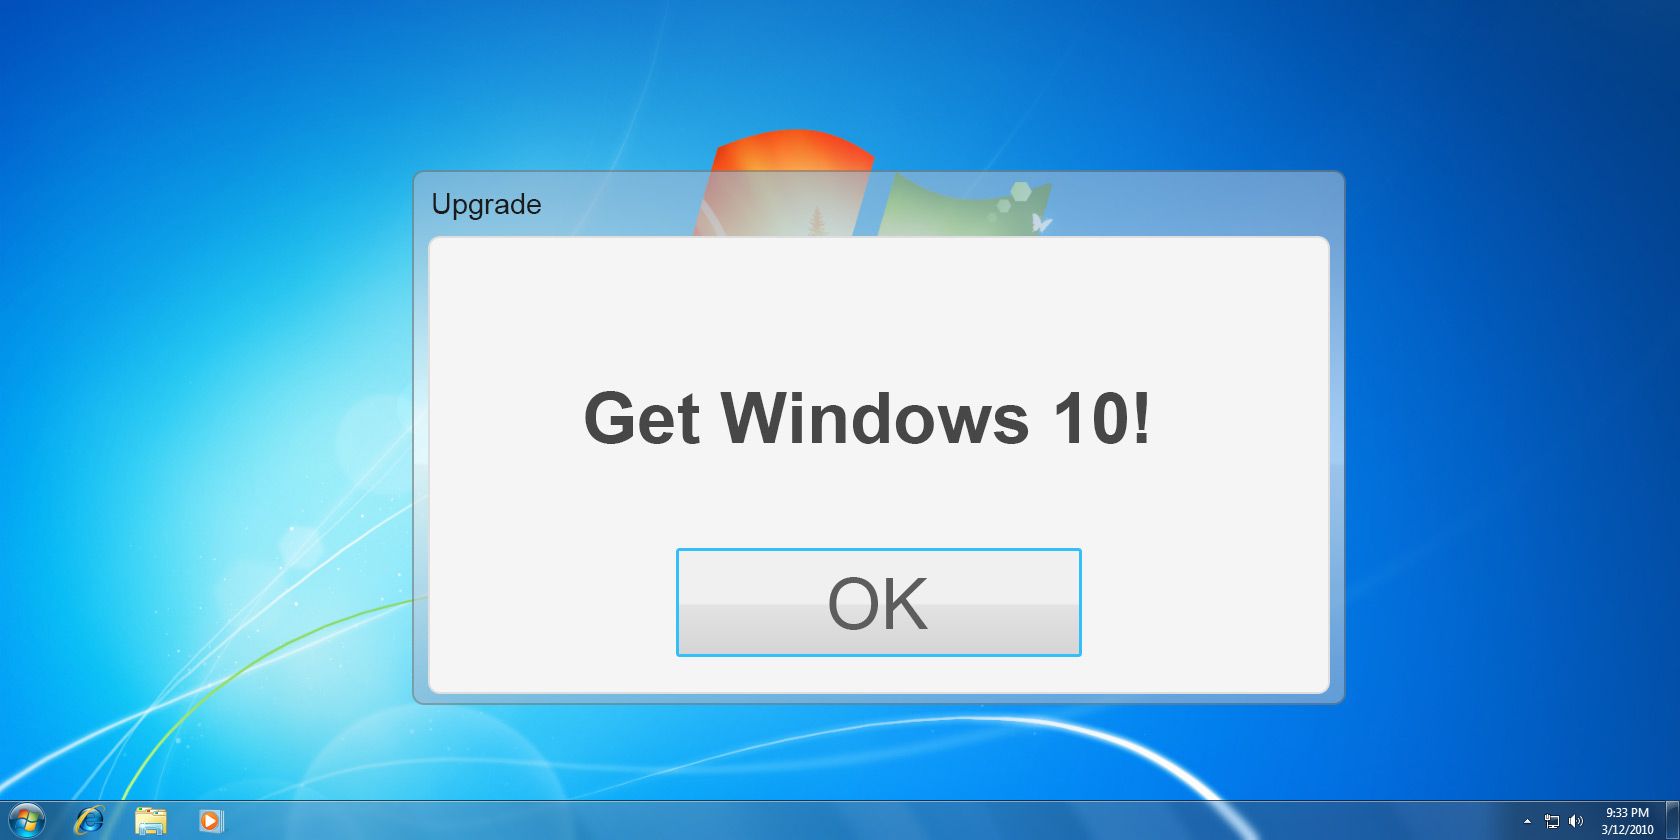 Get Windows 10: It's Not a Virus!